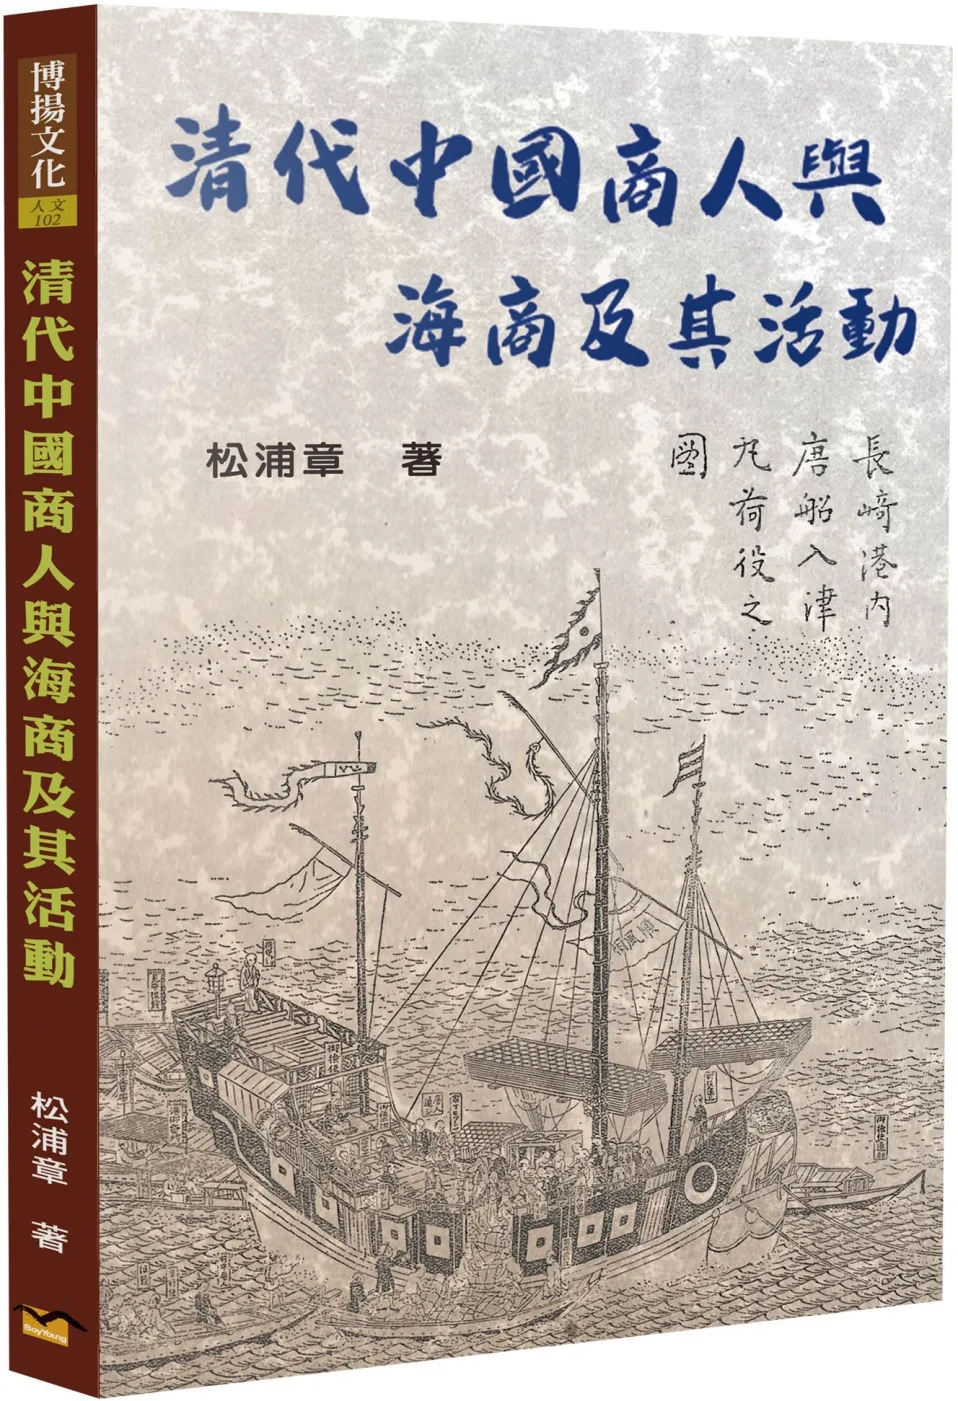 清代中國商人與海商及其活動